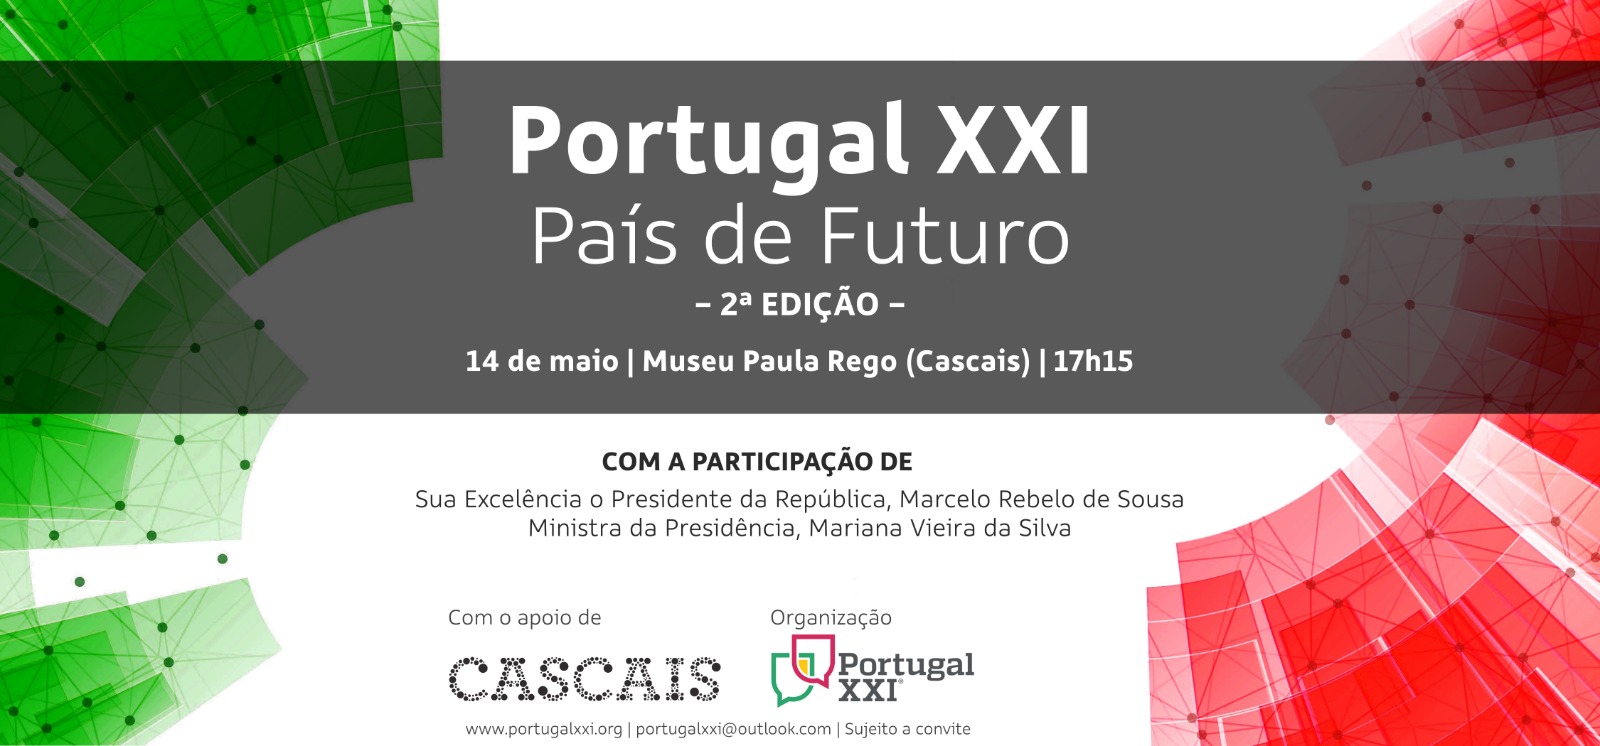 Portugal XXI | "País de Futuro" - 2.ª edição